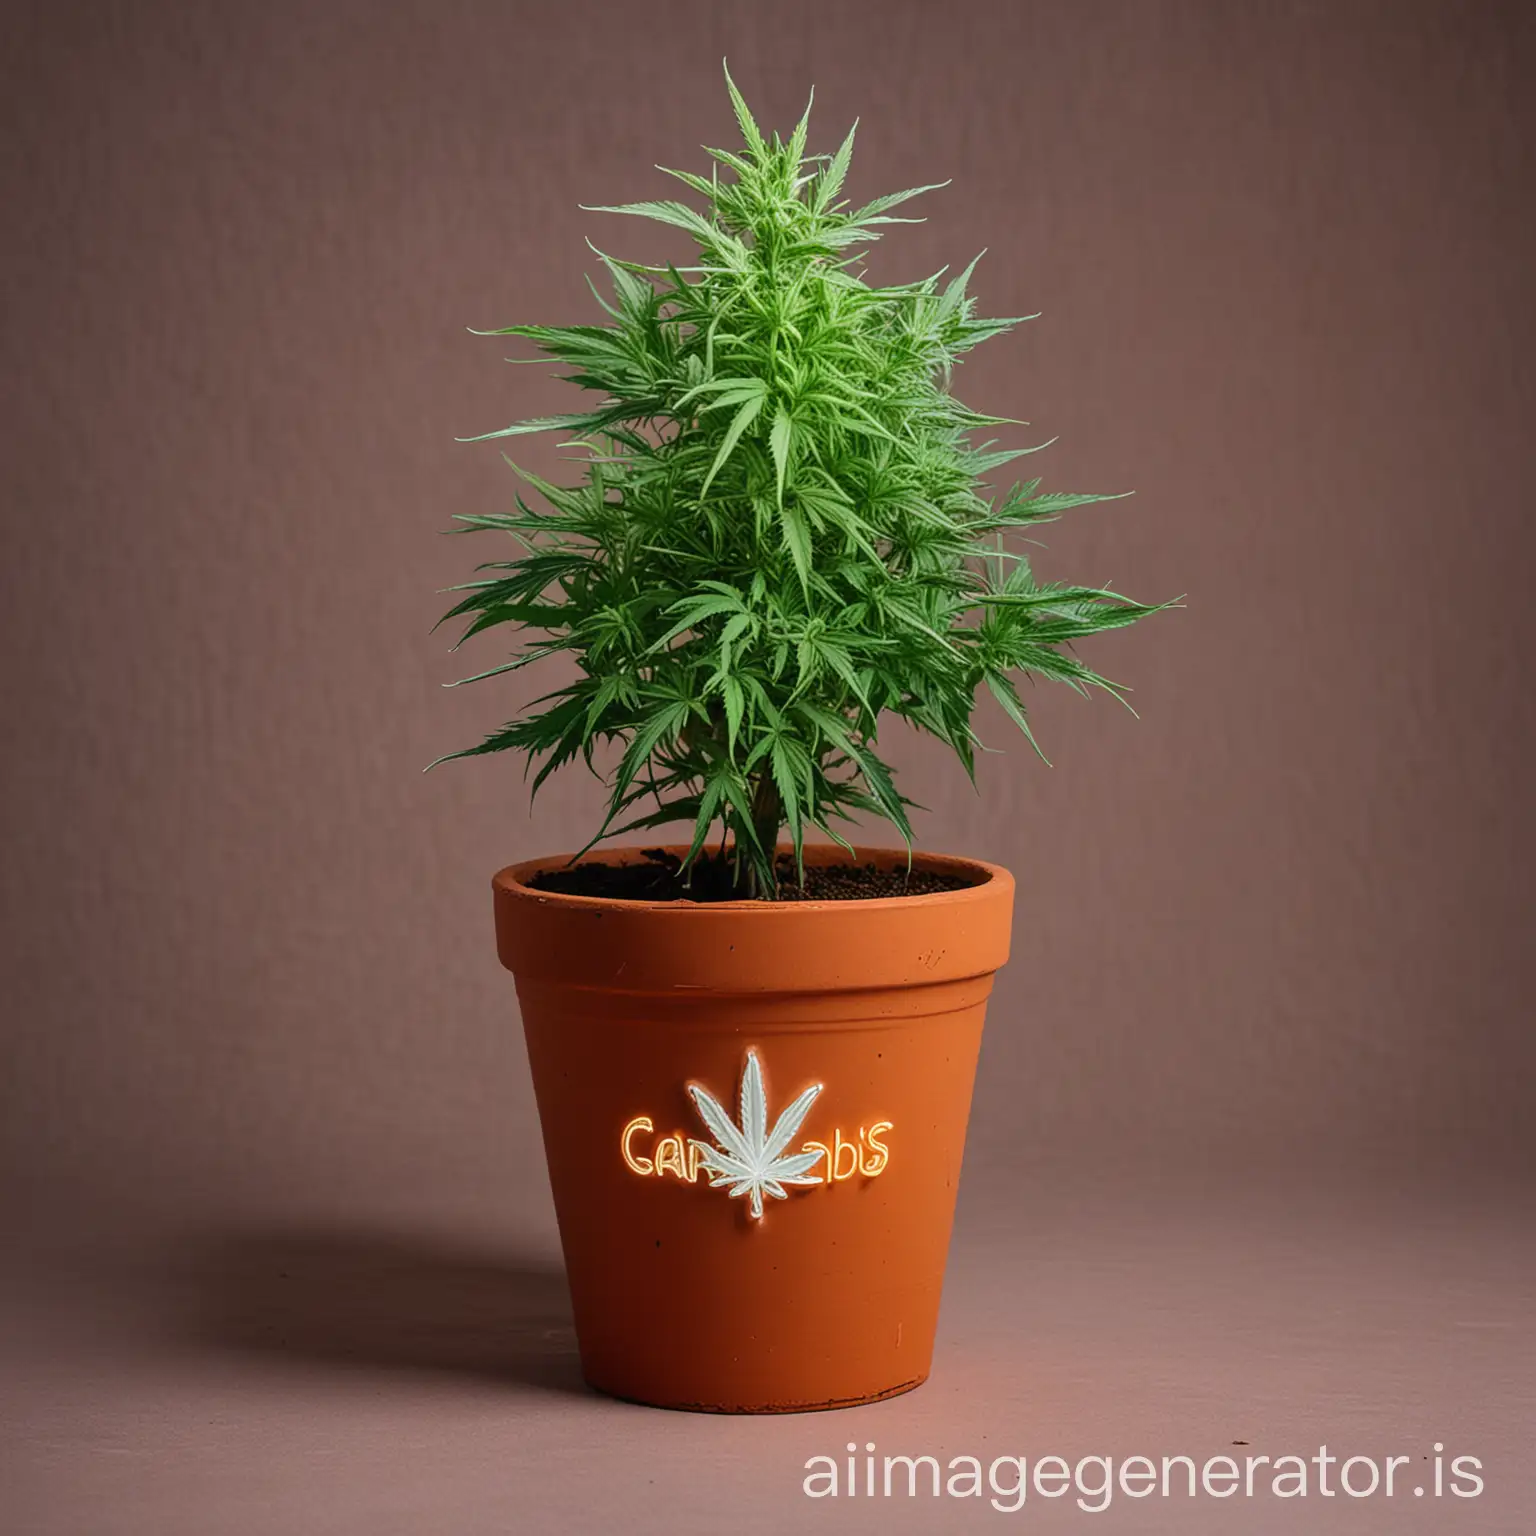 cannabis neon in a terracotta pot